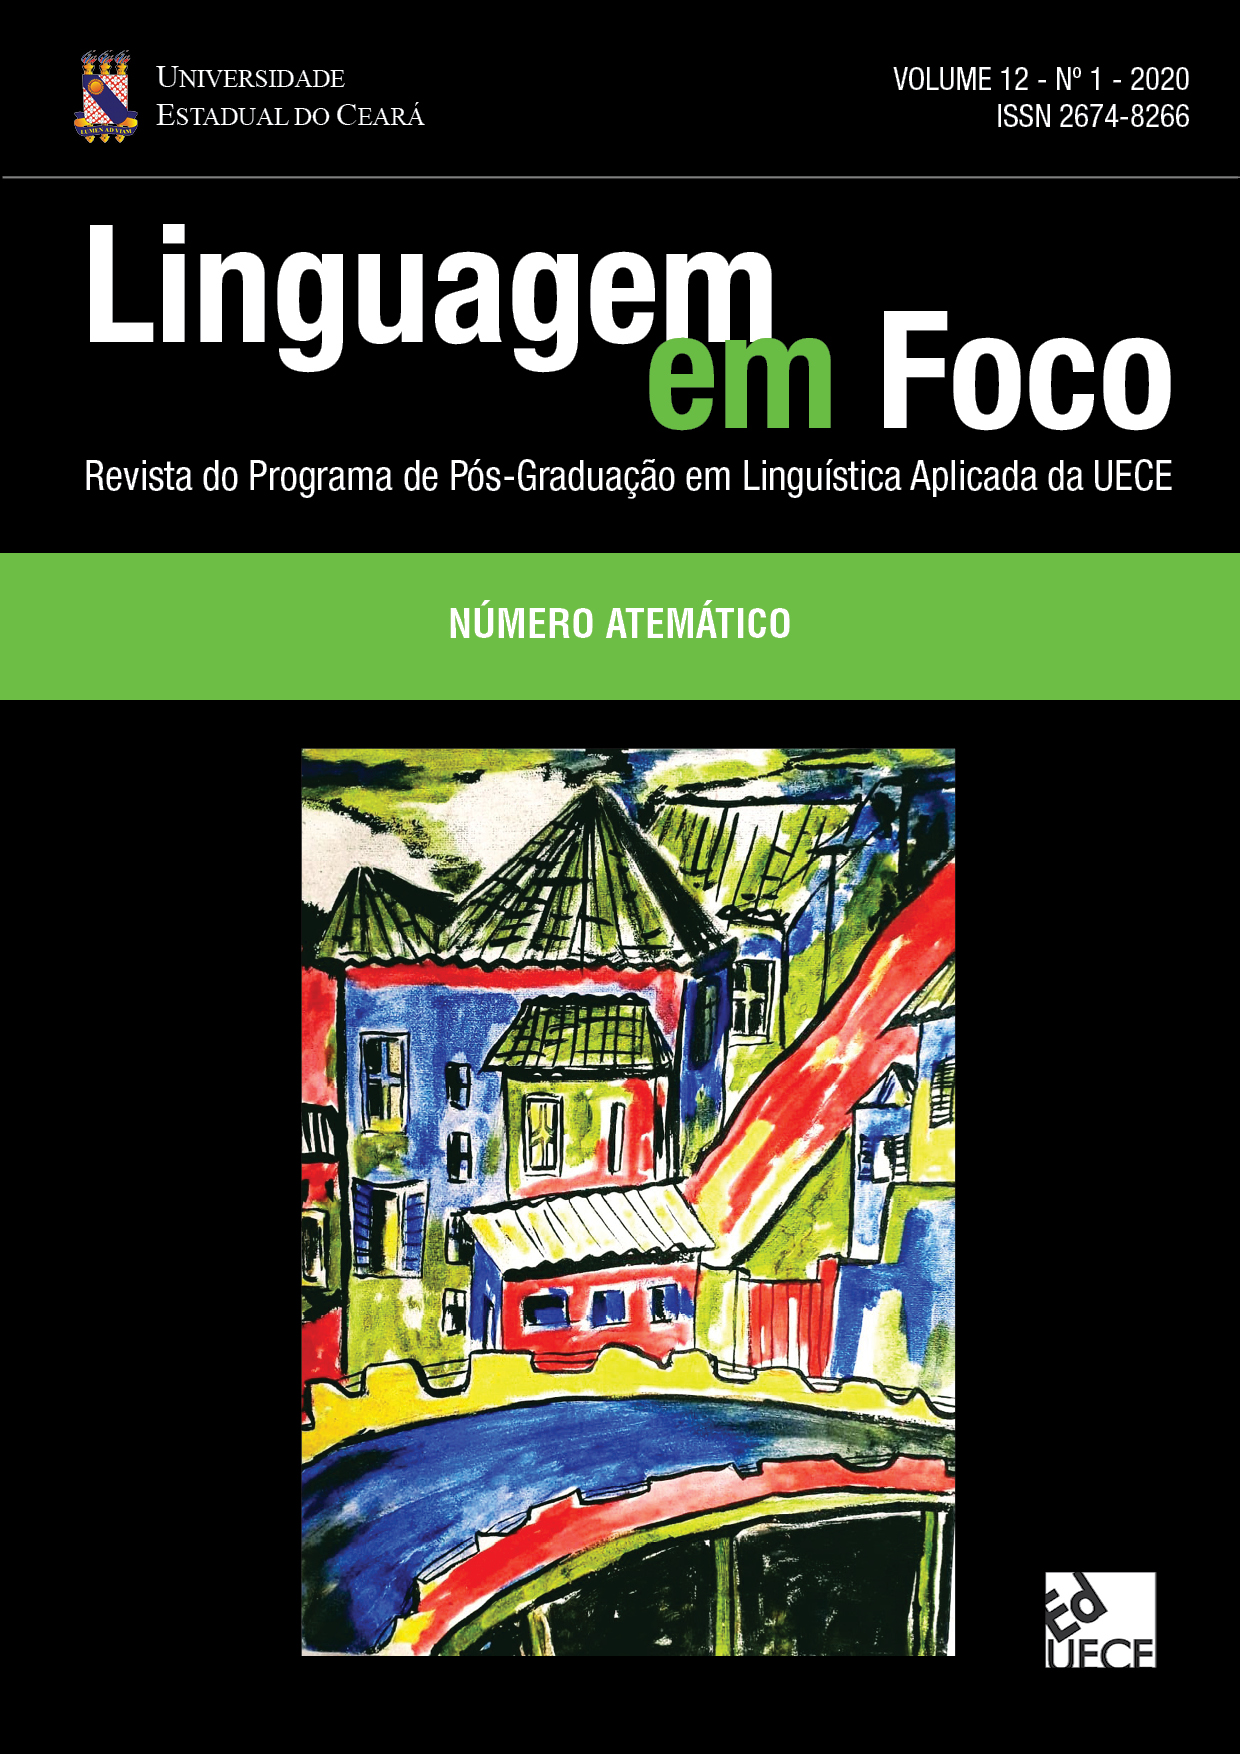 Capa do primeiro número do décimo segundo volume da Revista Linguagem em Foco do ano de 2020